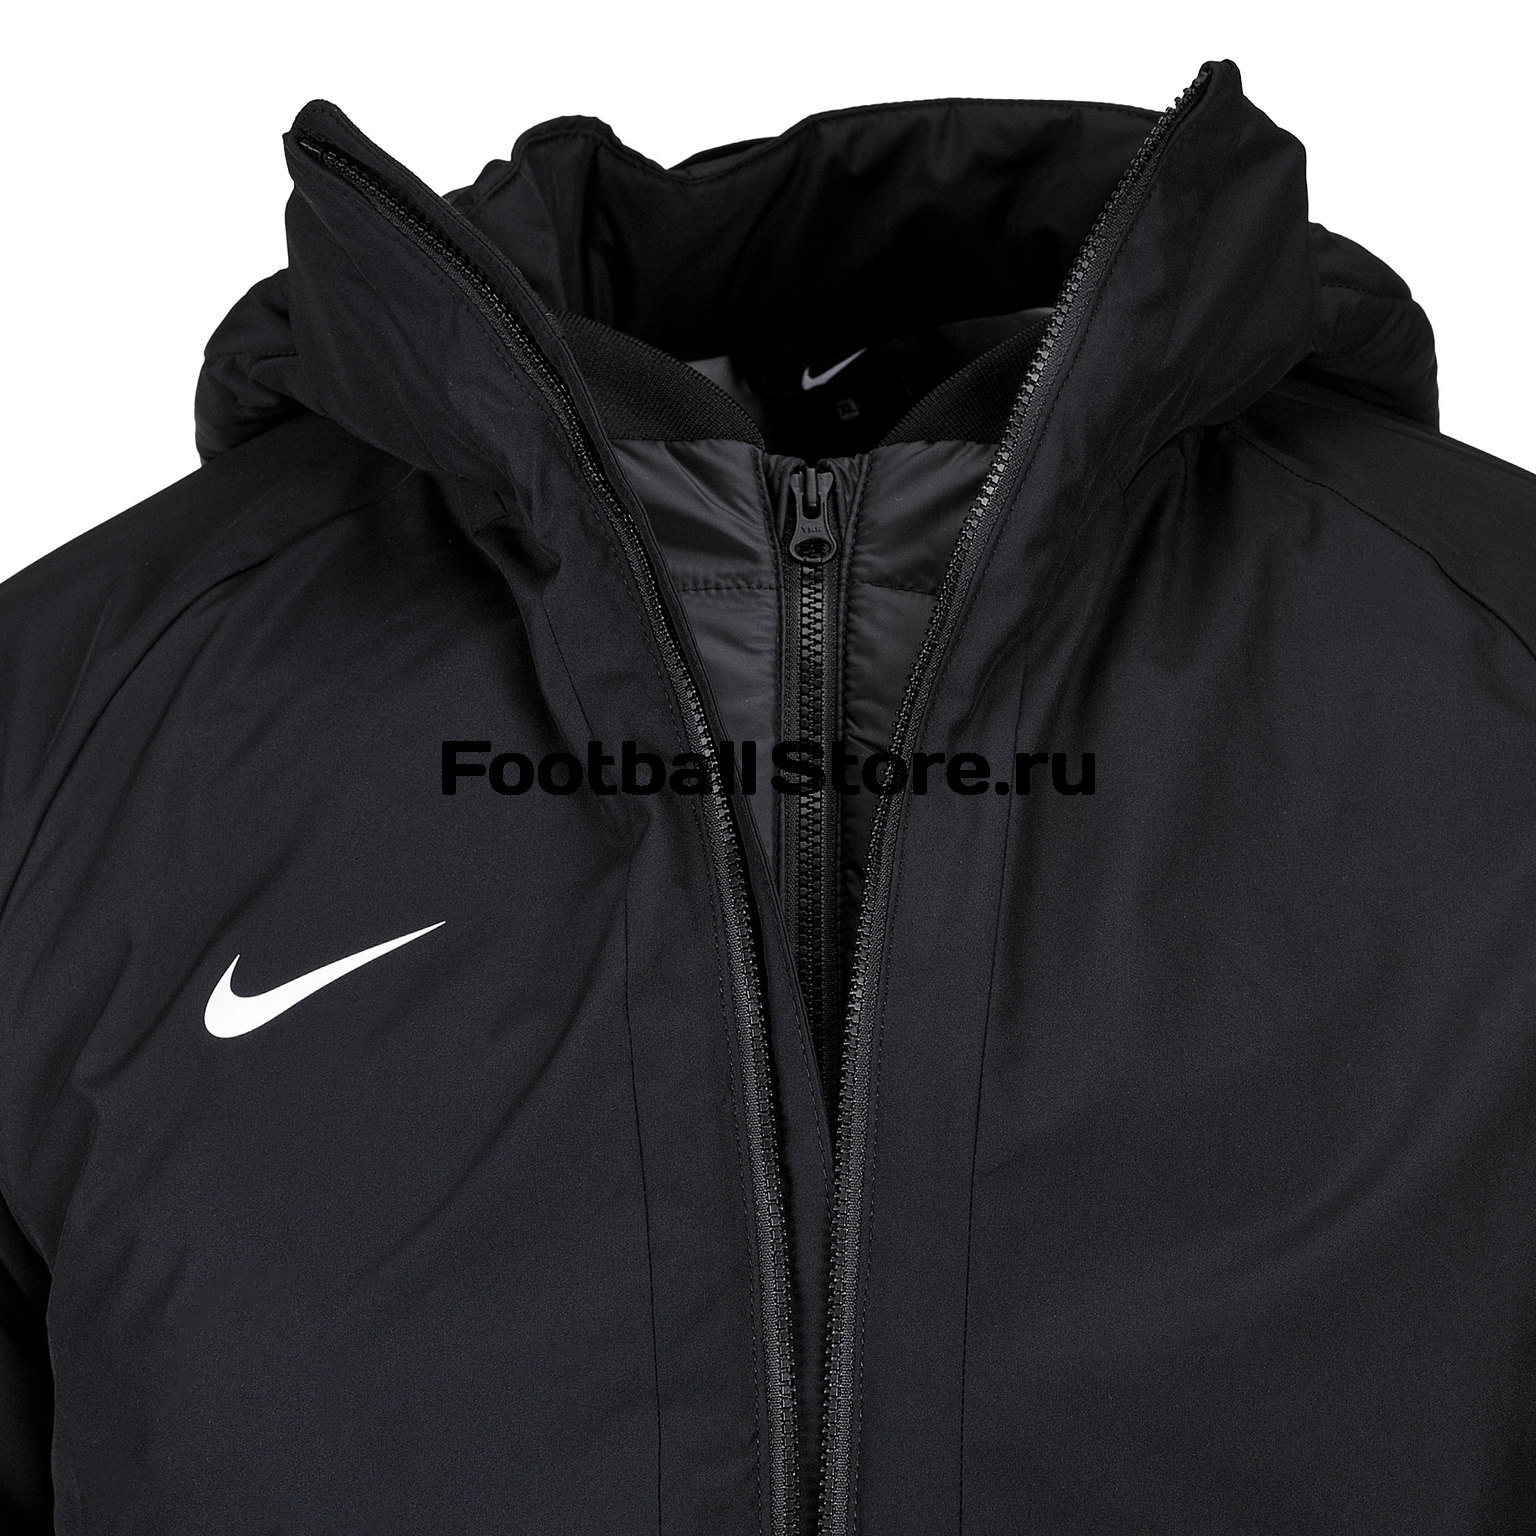 спортивную Куртка подростковая Nike Jacket - цены, фото, описание